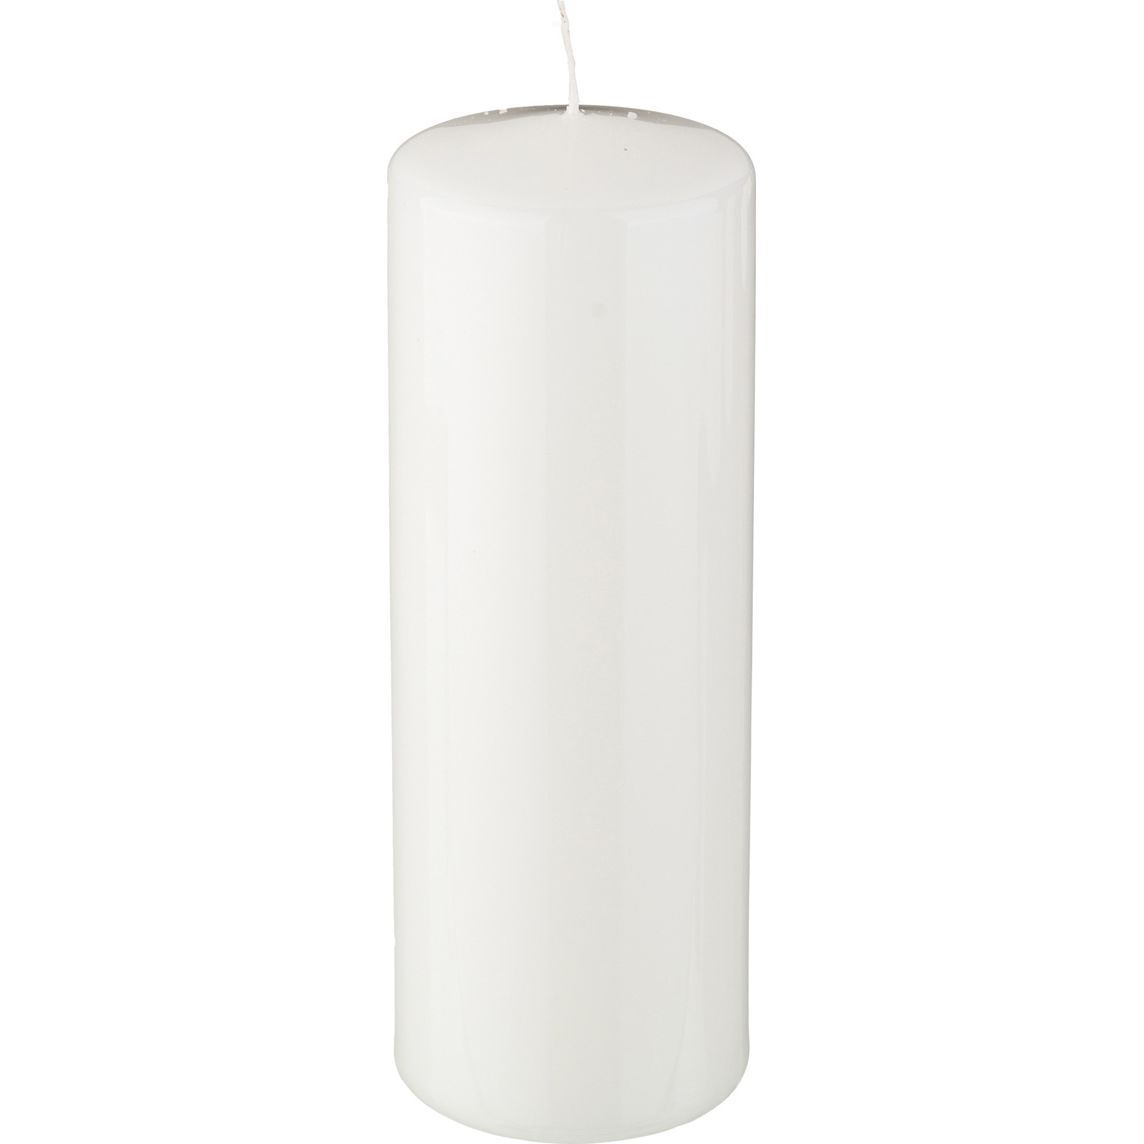 Свеча Luvinia (7х20 см), размер 7х20 см, цвет белый adp386926 Свеча Luvinia (7х20 см) - фото 1